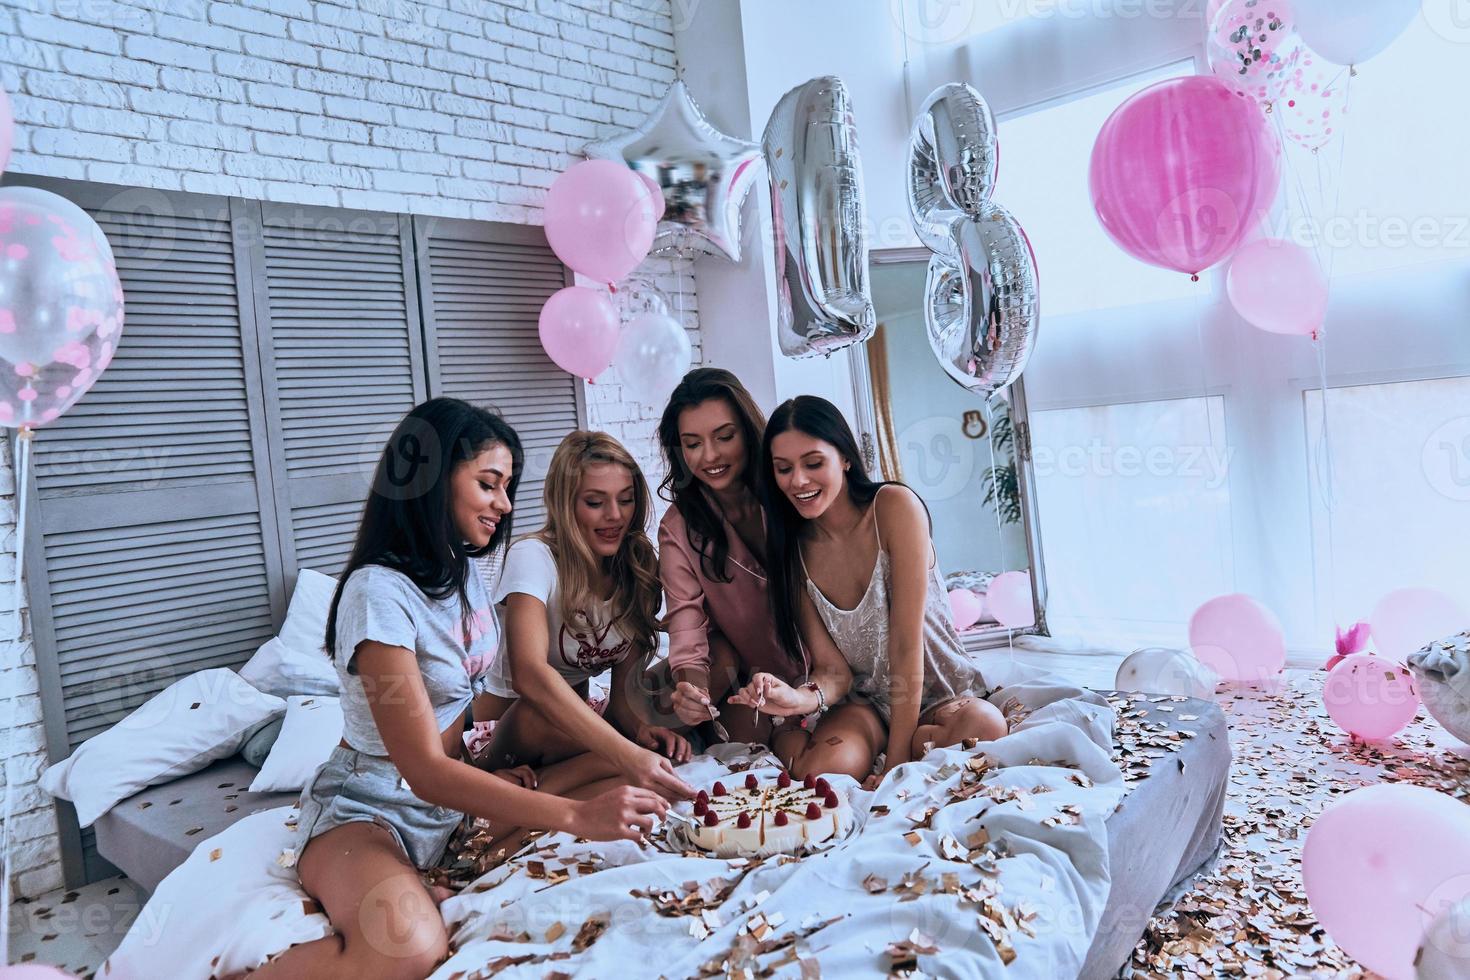 hora do bolo. quatro belas jovens sorridentes de pijama comendo bolo enquanto faz uma festa do pijama no quarto com balões por todo o lado foto